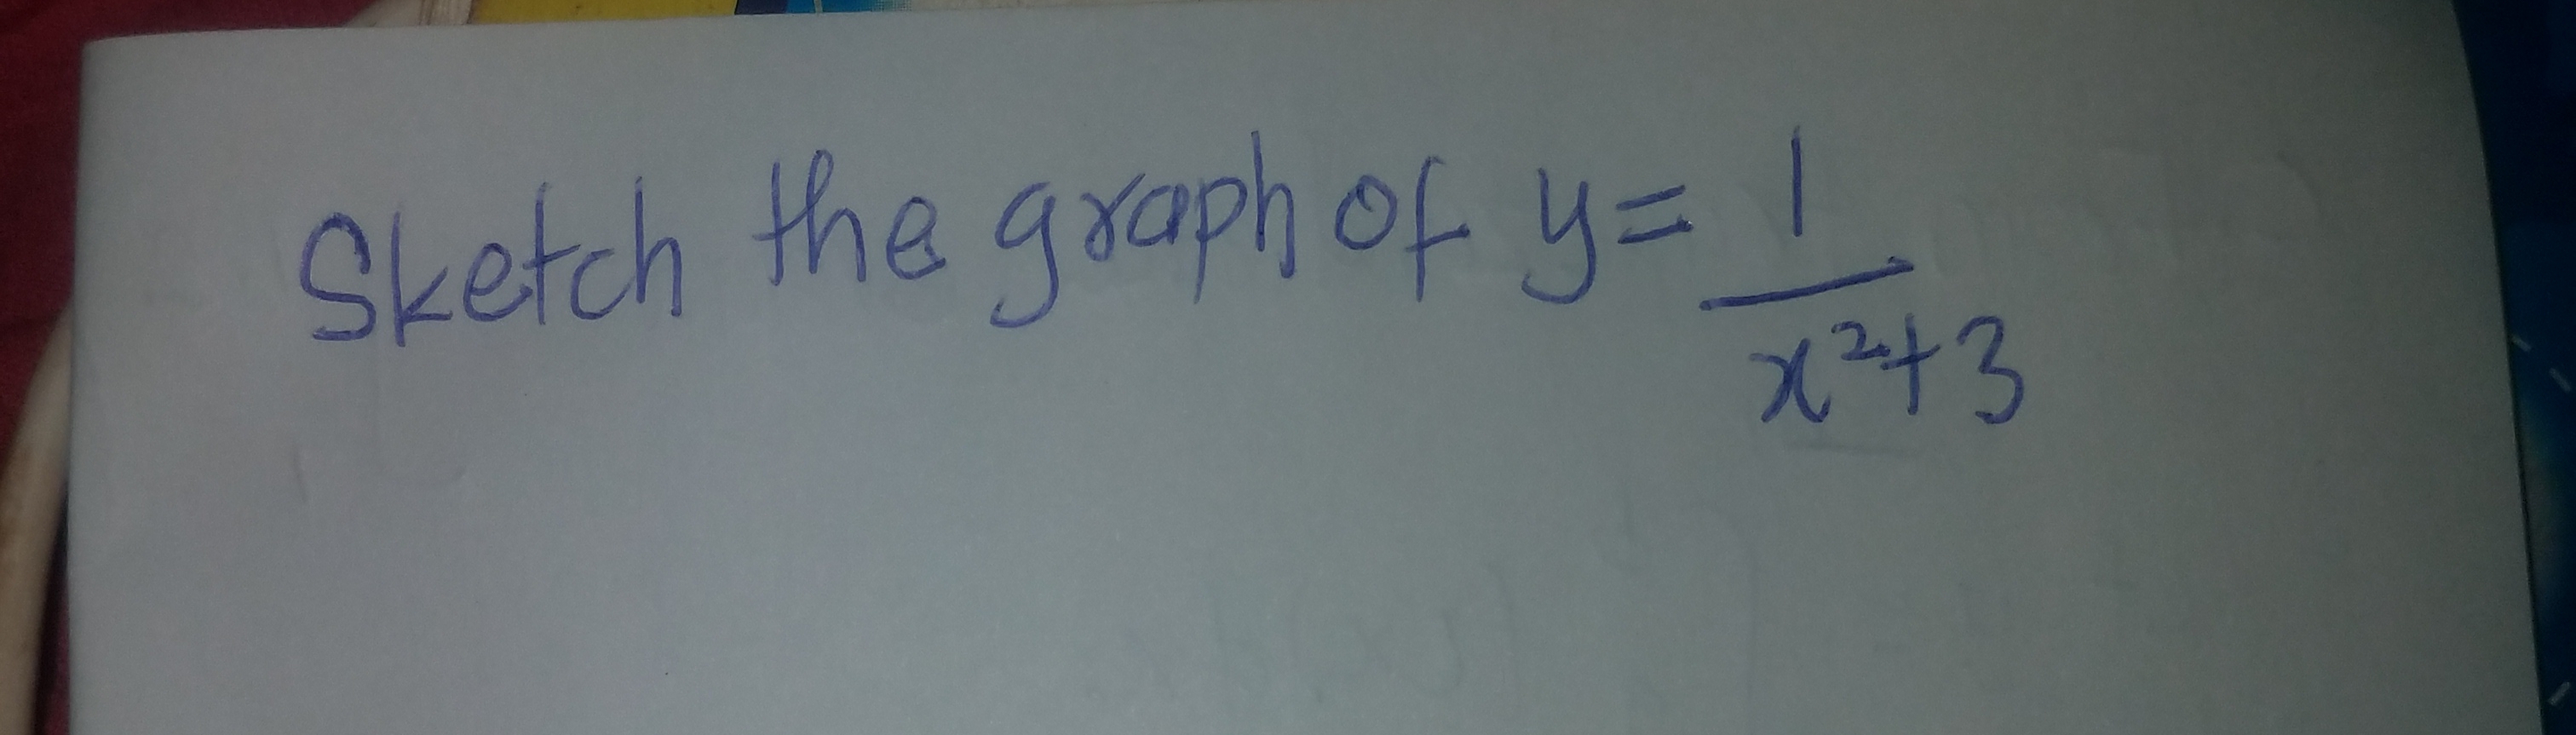 Sketch the graph of y= 1
